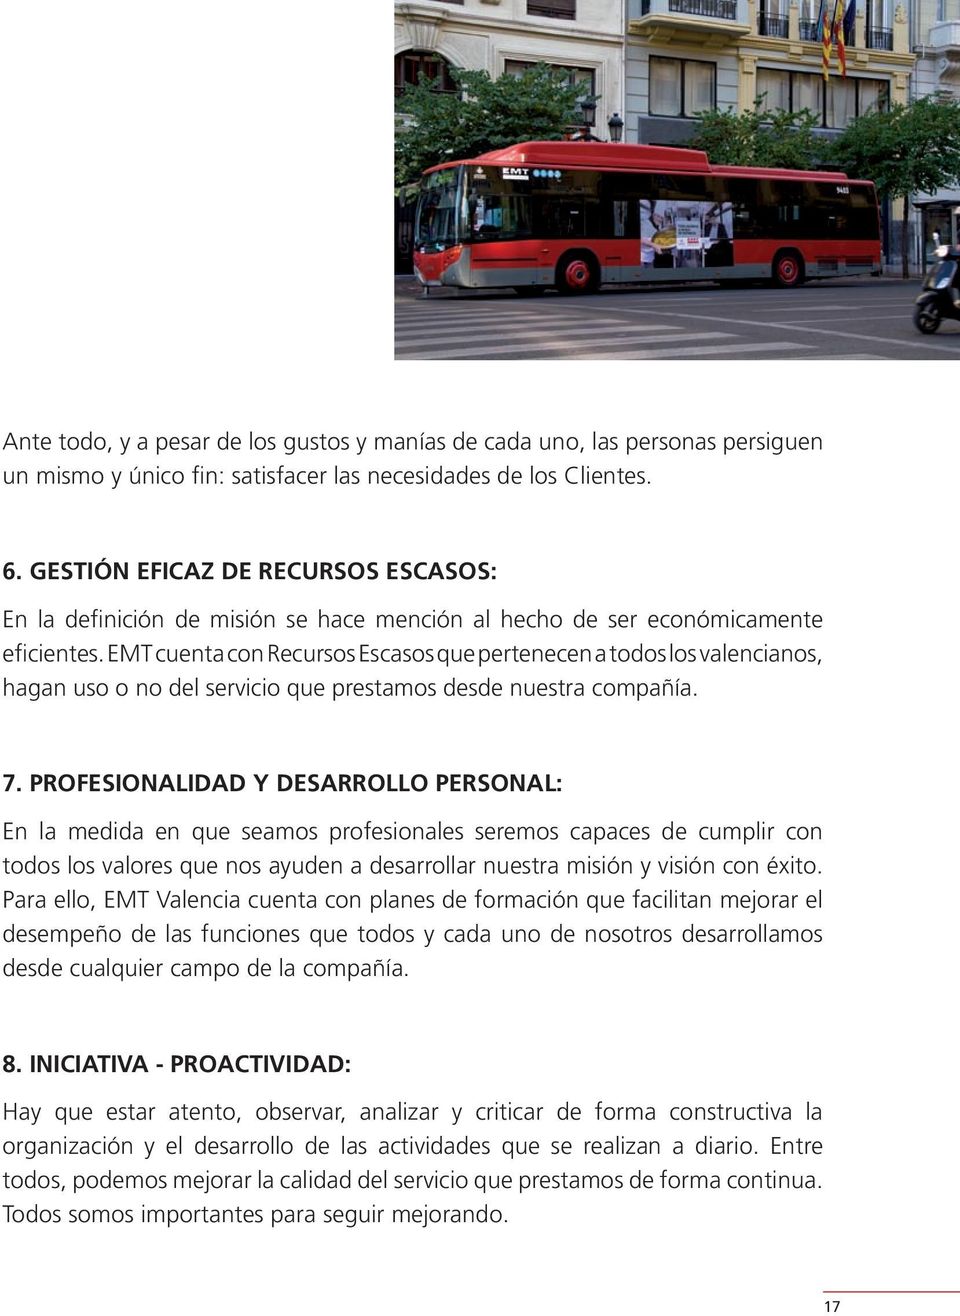 EMT cuenta con Recursos Escasos que pertenecen a todos los valencianos, hagan uso o no del servicio que prestamos desde nuestra compañía. 7.